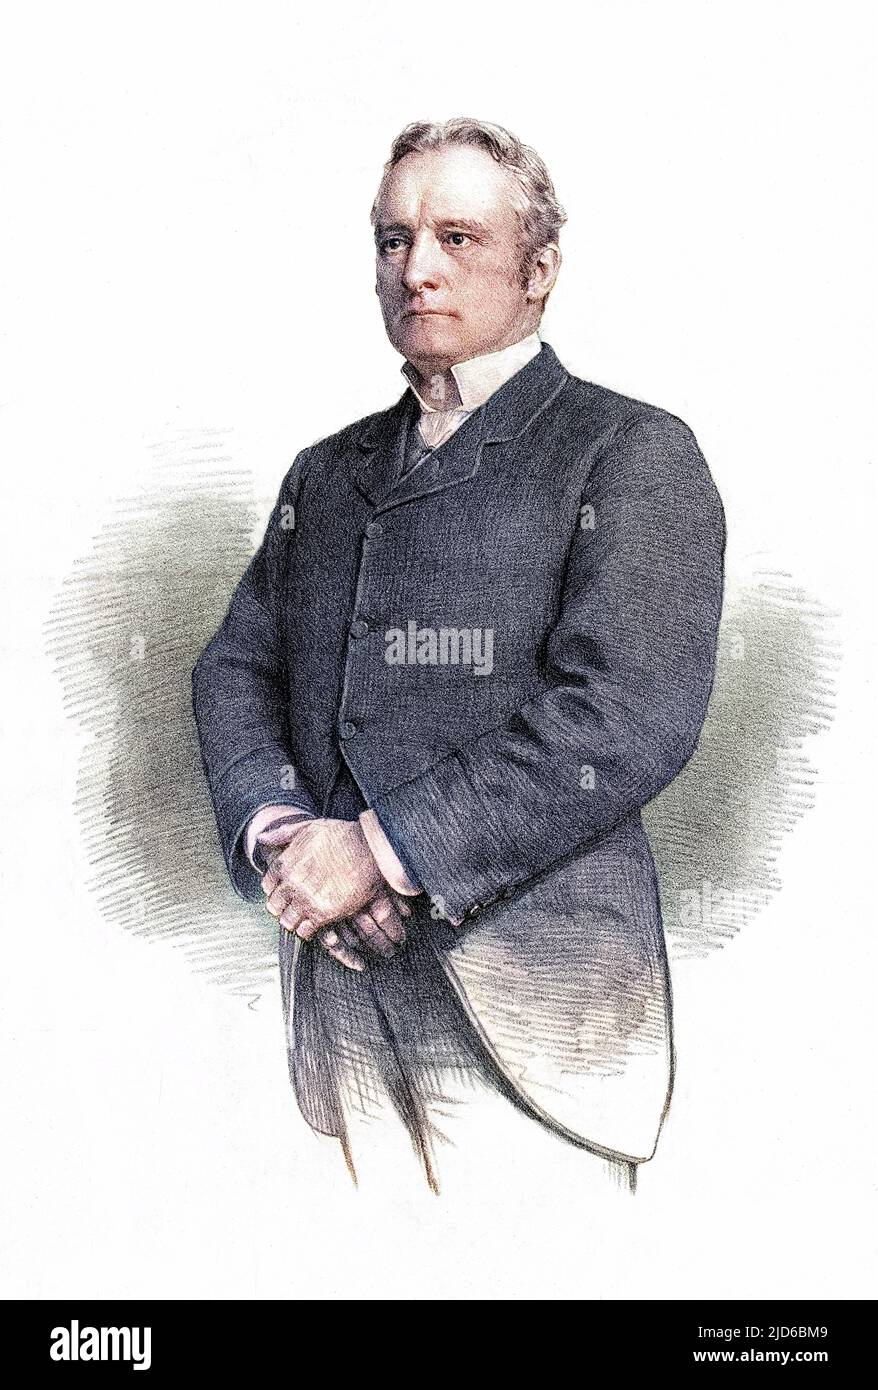 Sir PHILIP ALBERT MUNTZ, primo produttore di baronet Midlands e statesman, MP per Warwickshire presumibilmente il figlio di Philip Henry Muntz? Versione colorata di : 10166850 Data: 1839 - 1908 Foto Stock